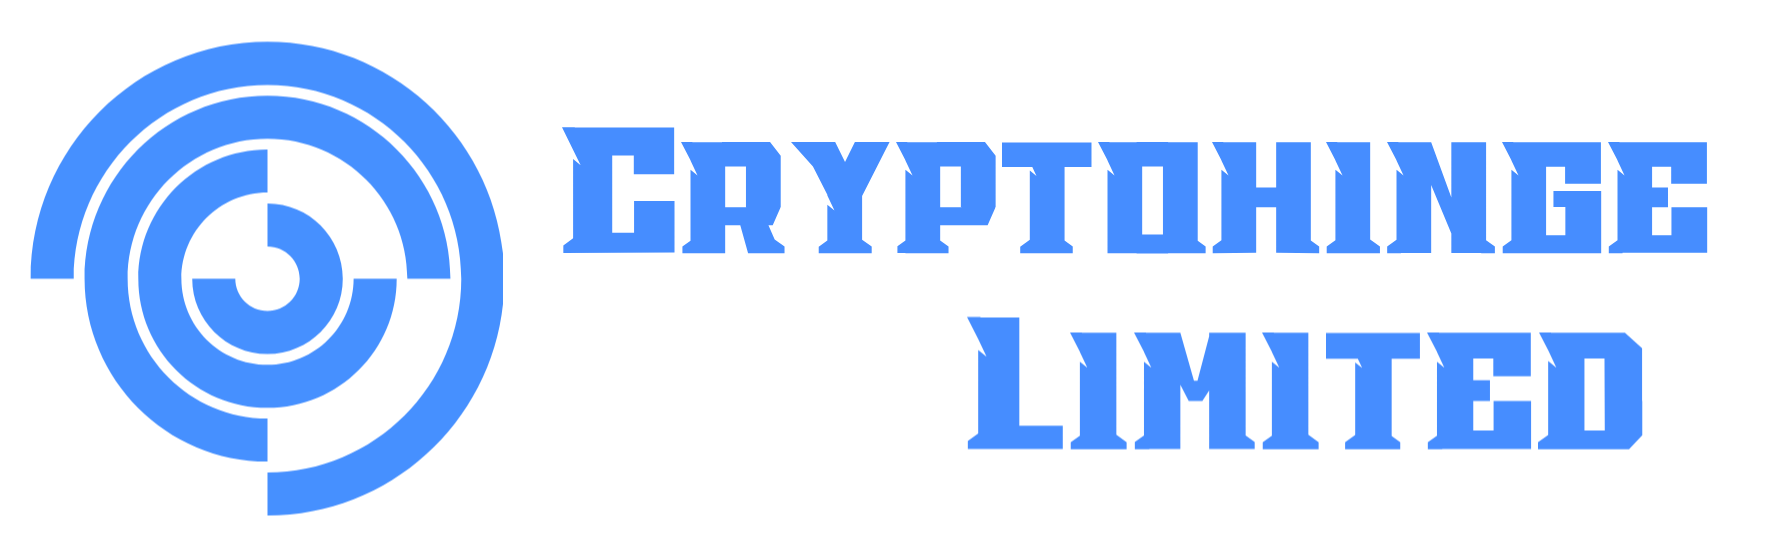 CryptoHinge Limited Logo